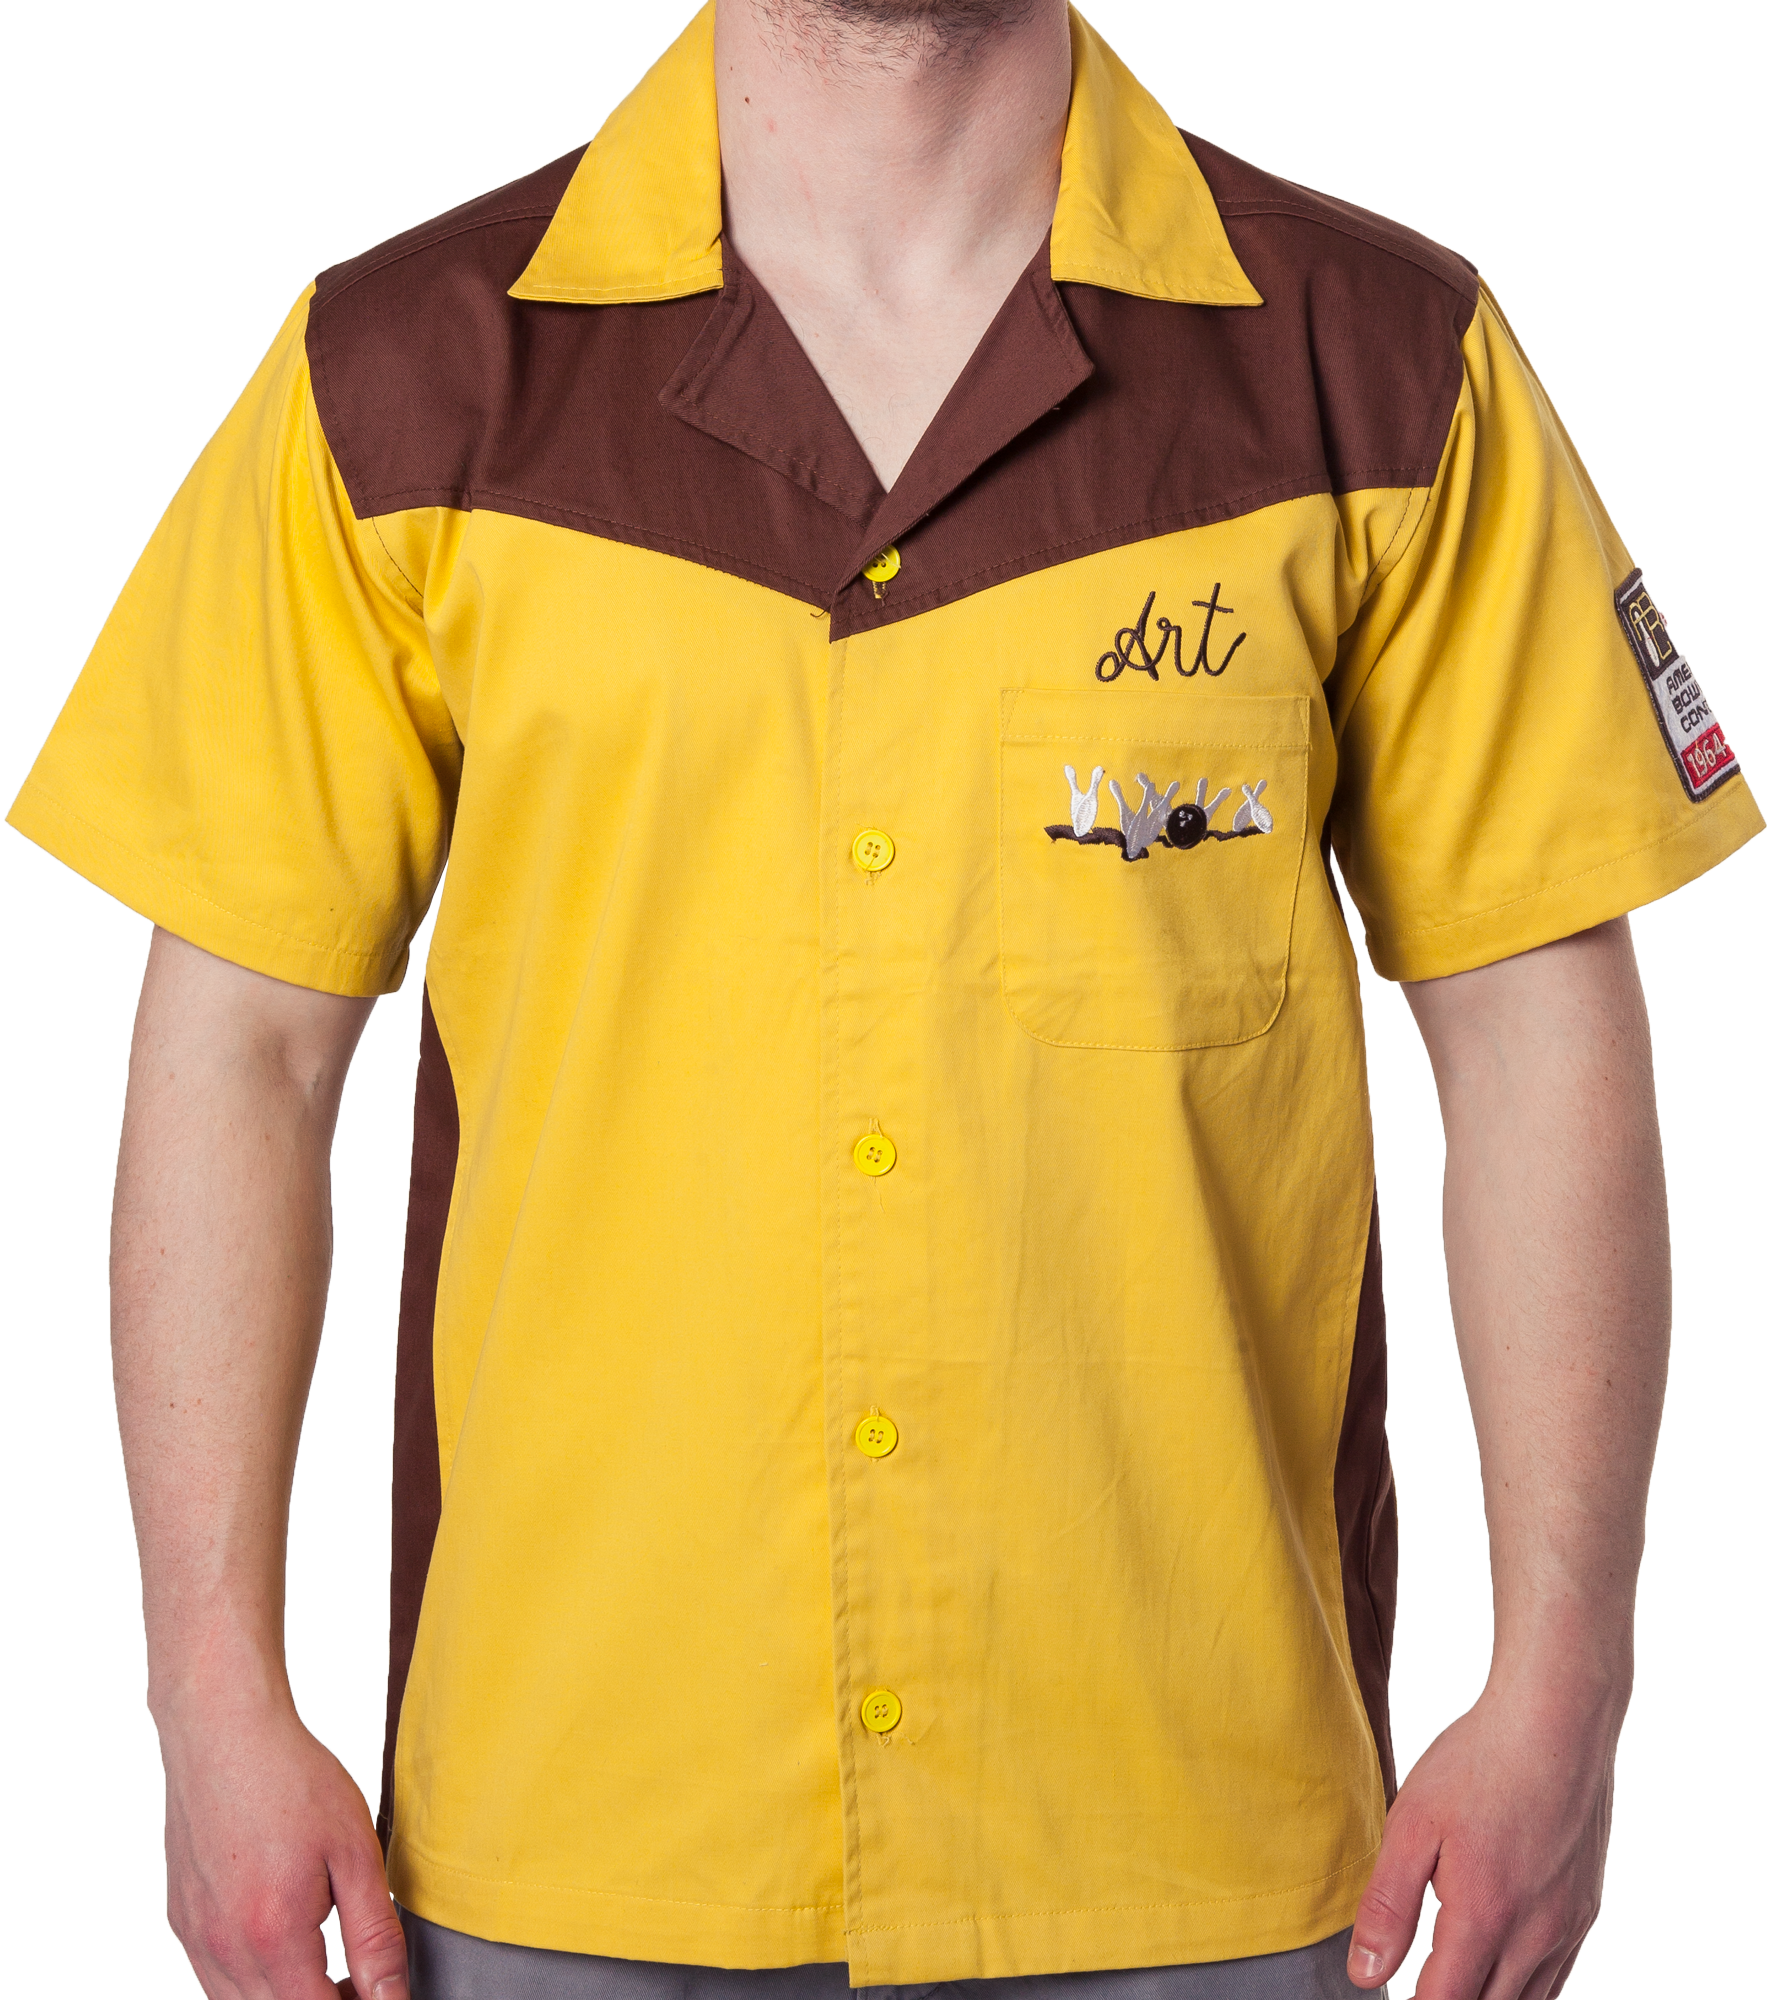 Authentic Replica Big Lebowski Bowling Shirt